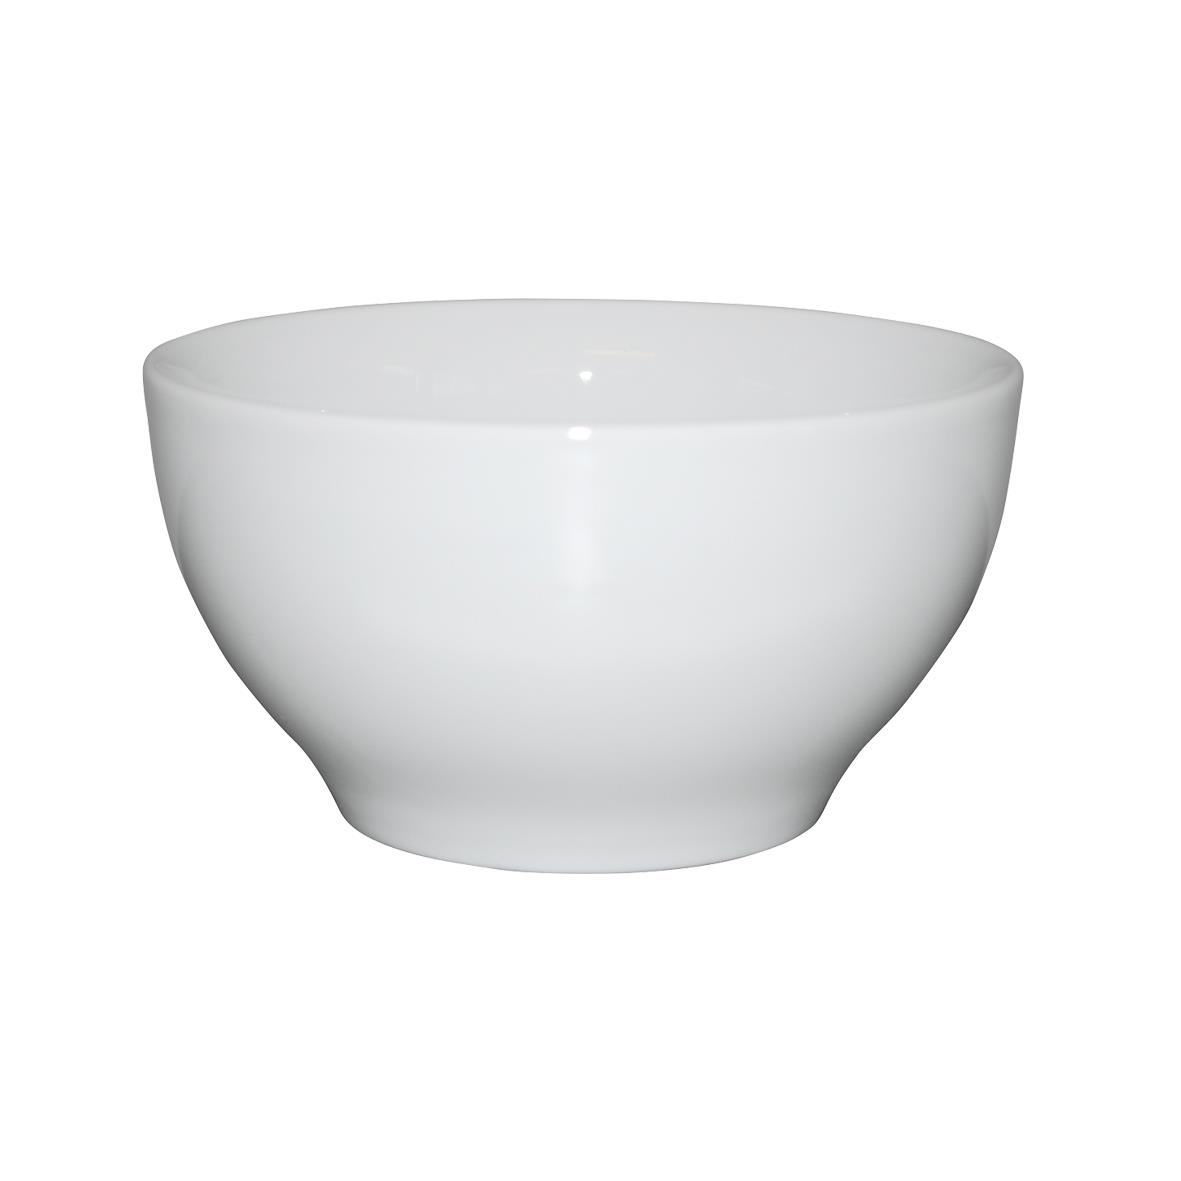 Bowl Weiß mit einem Durchmesser von 12 Zentimetern